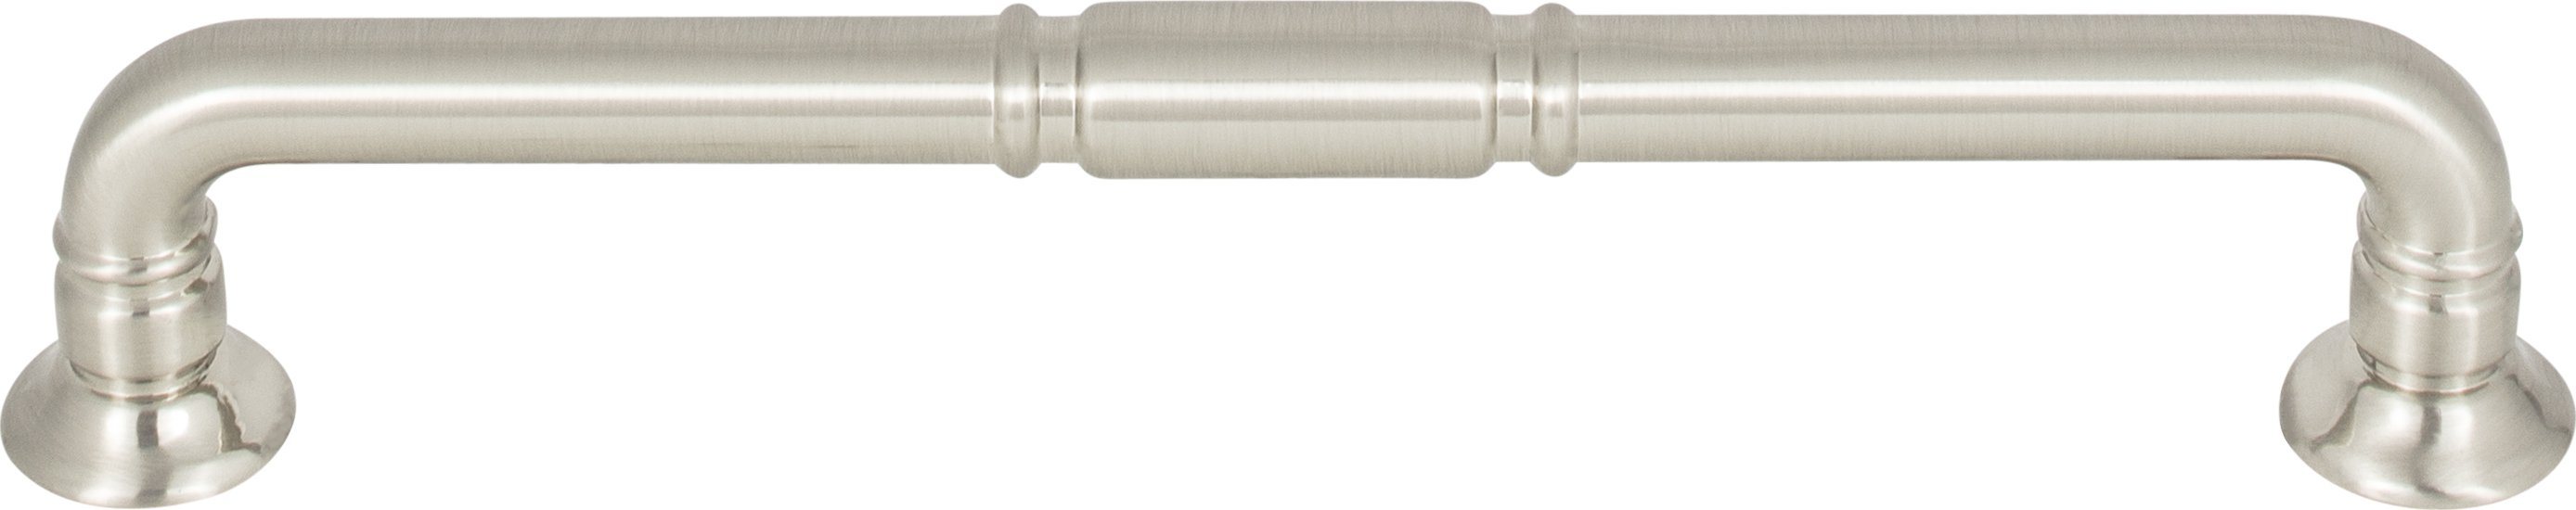 Top Knobs TK1004BSN 6-5/16in (160mm) Kent Pull Brushed Satin Nickel - KnobDepot